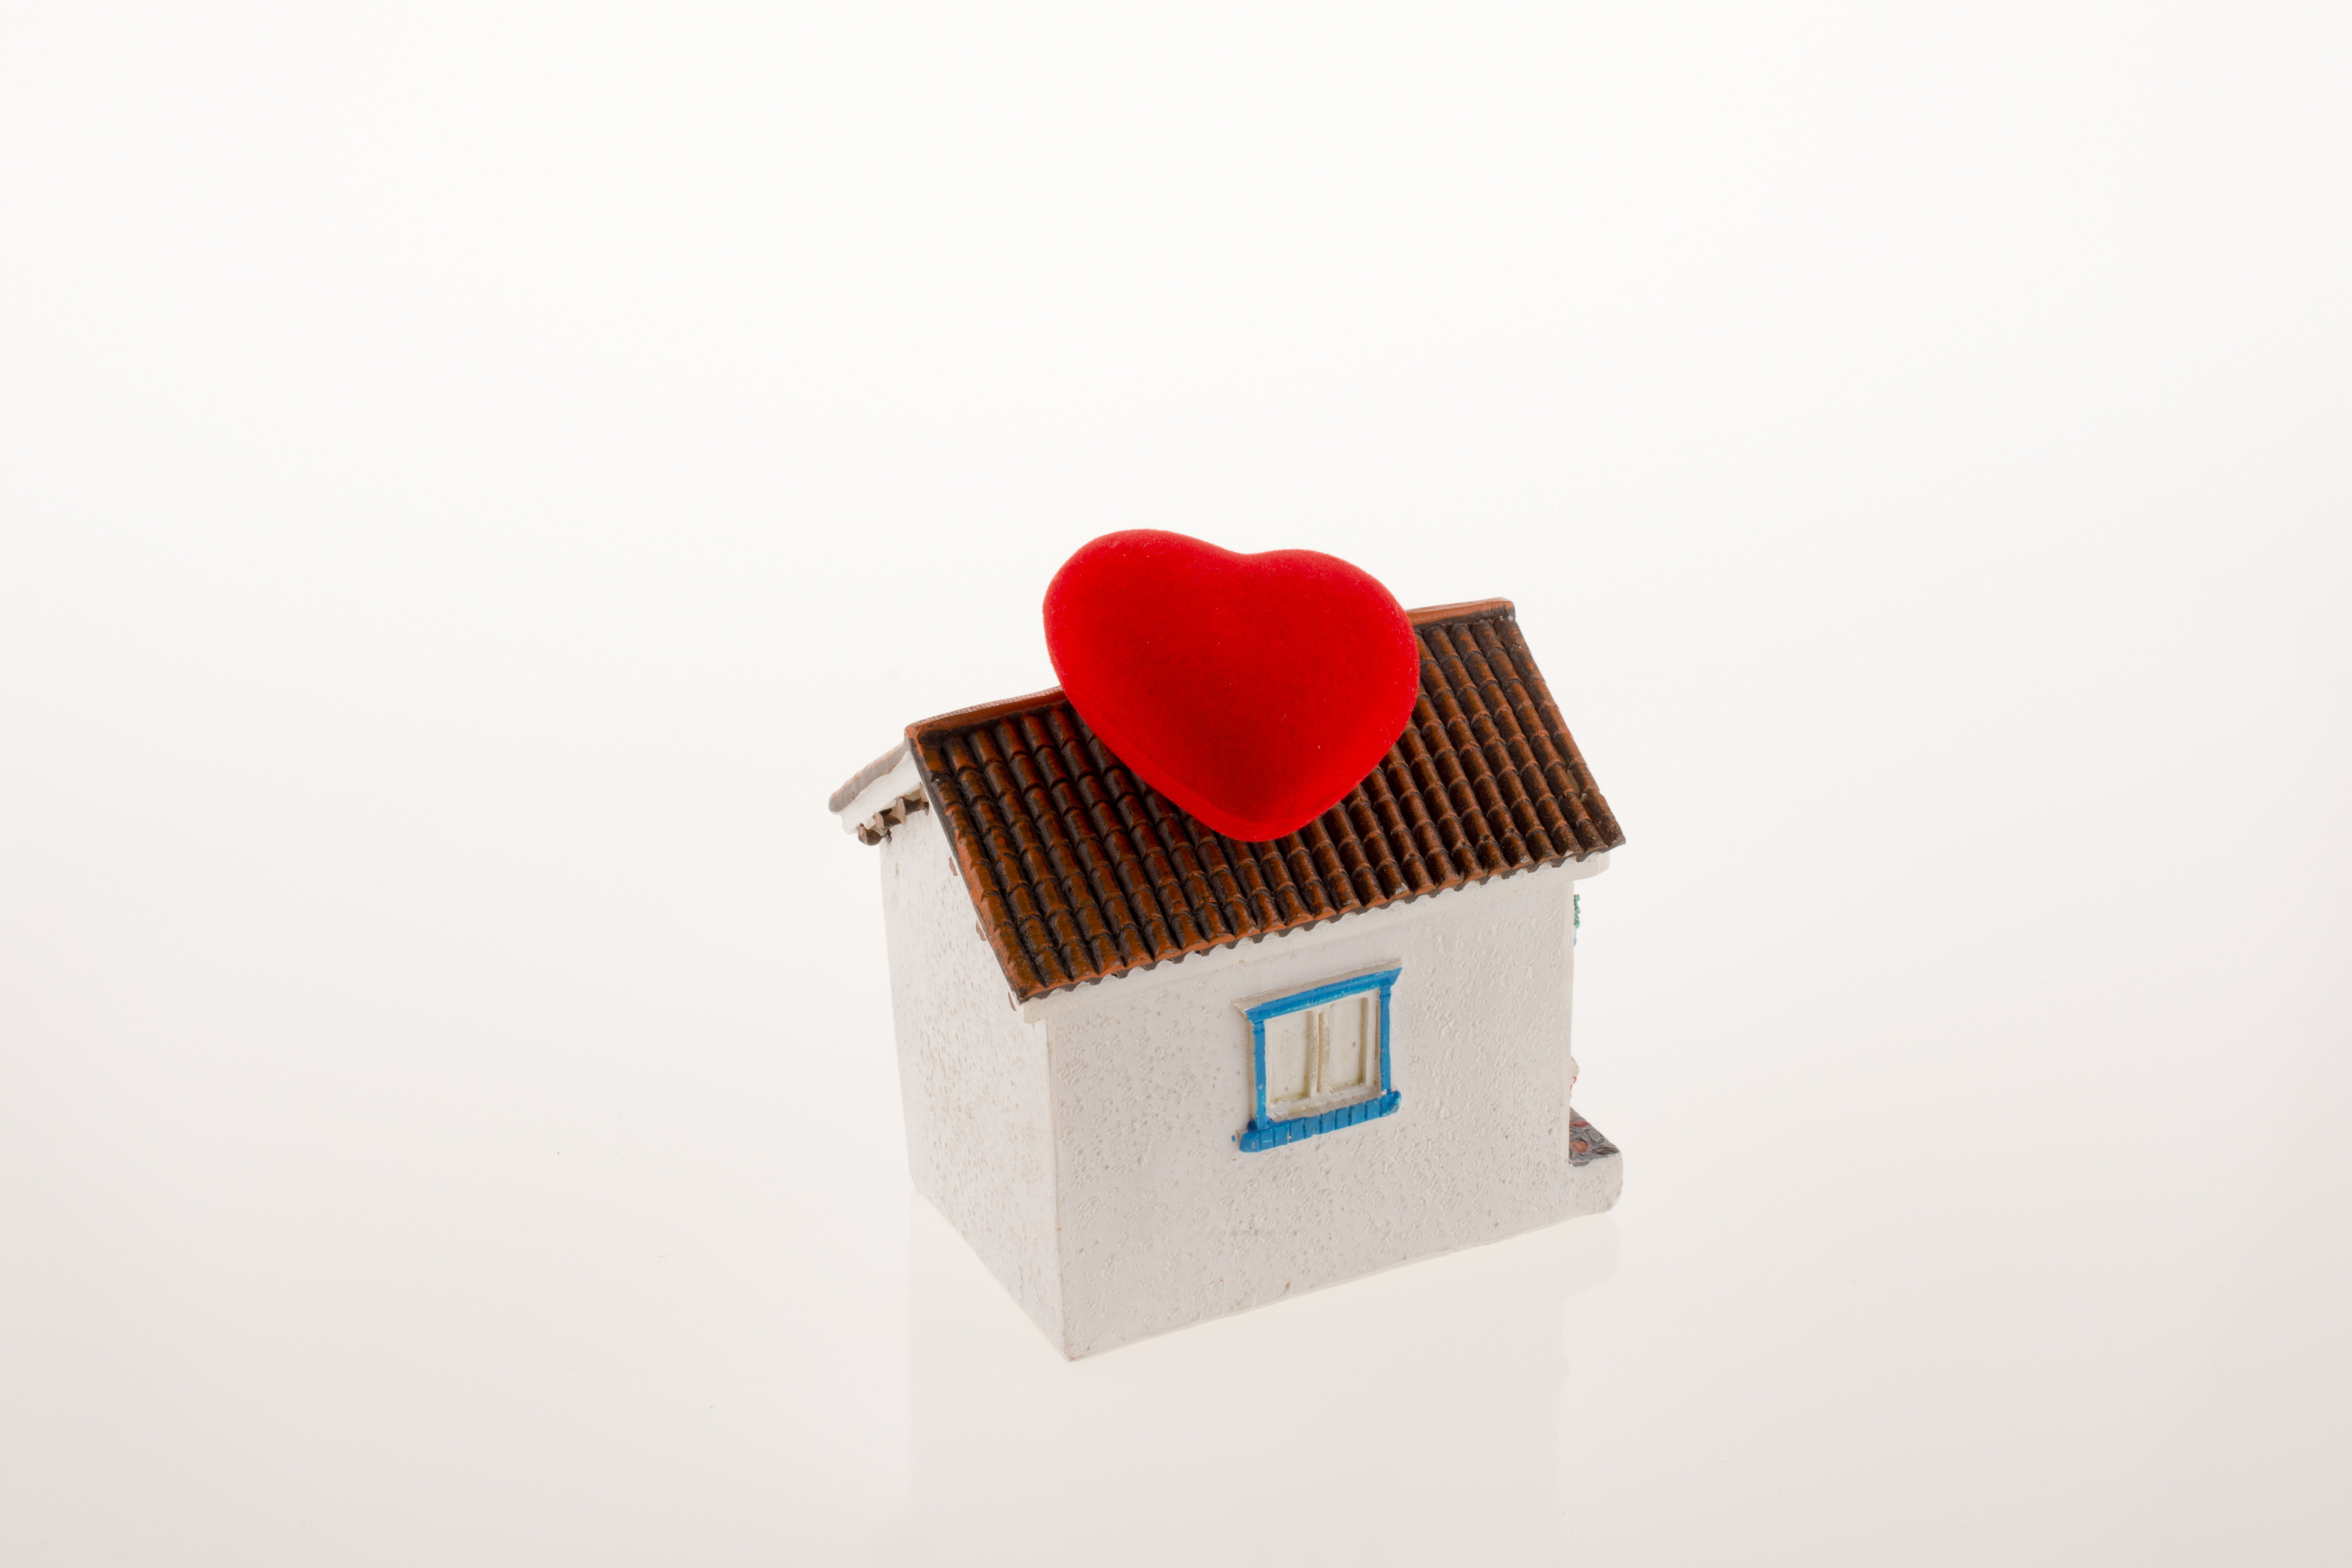 南京房产:购置婚房,房产证上署名会如何影响房子归属?